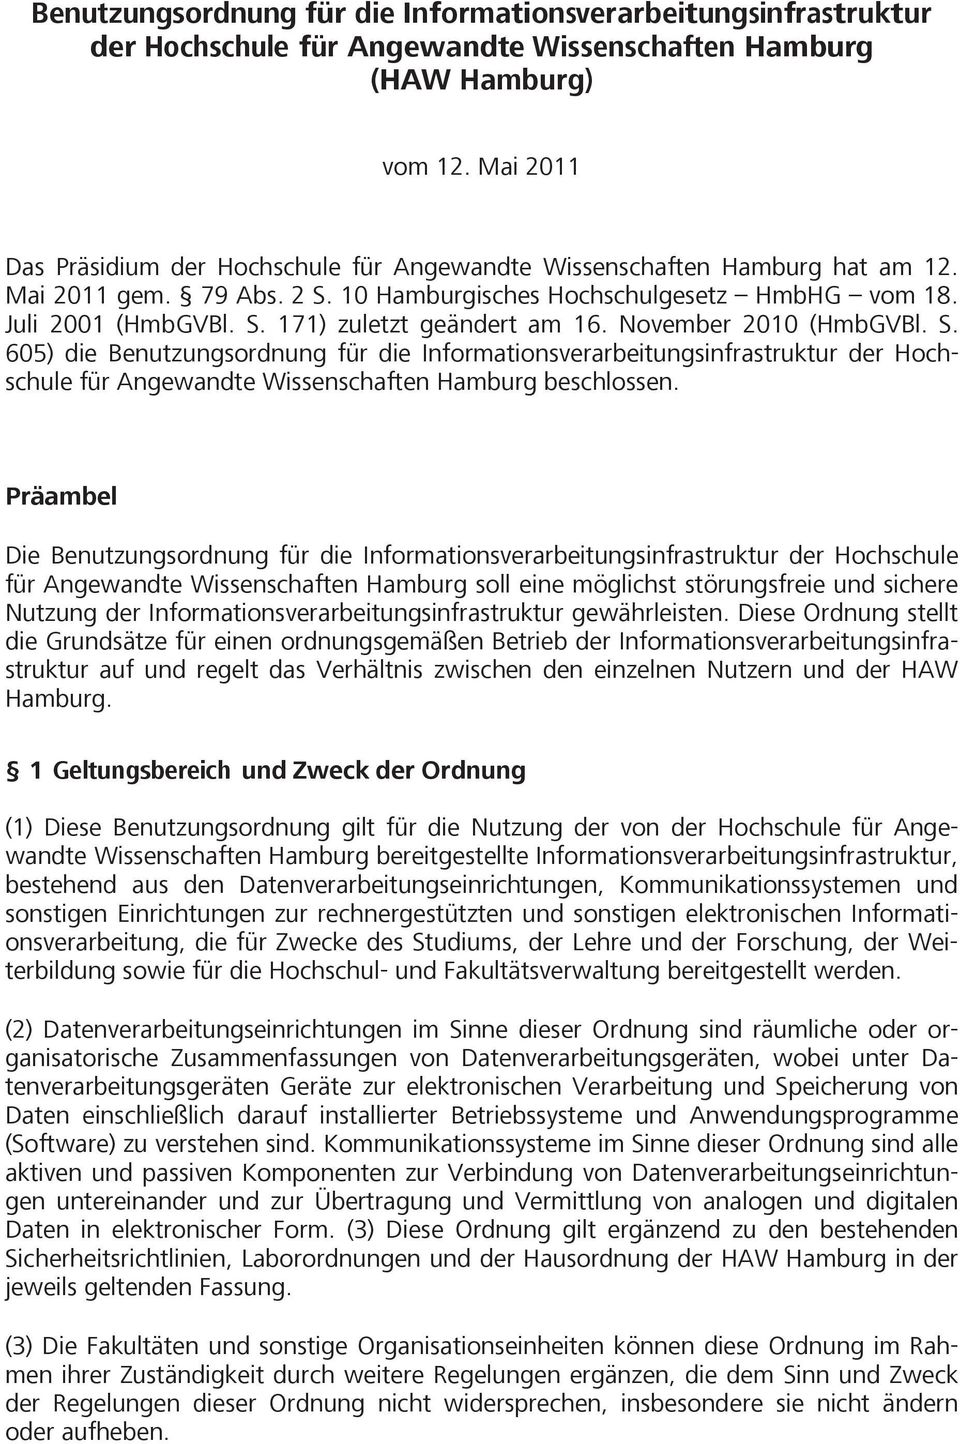 November 2010 (HmbGVBl. S. 605) die Benutzungsordnung für die Informationsverarbeitungsinfrastruktur der Hochschule für Angewandte Wissenschaften Hamburg beschlossen.